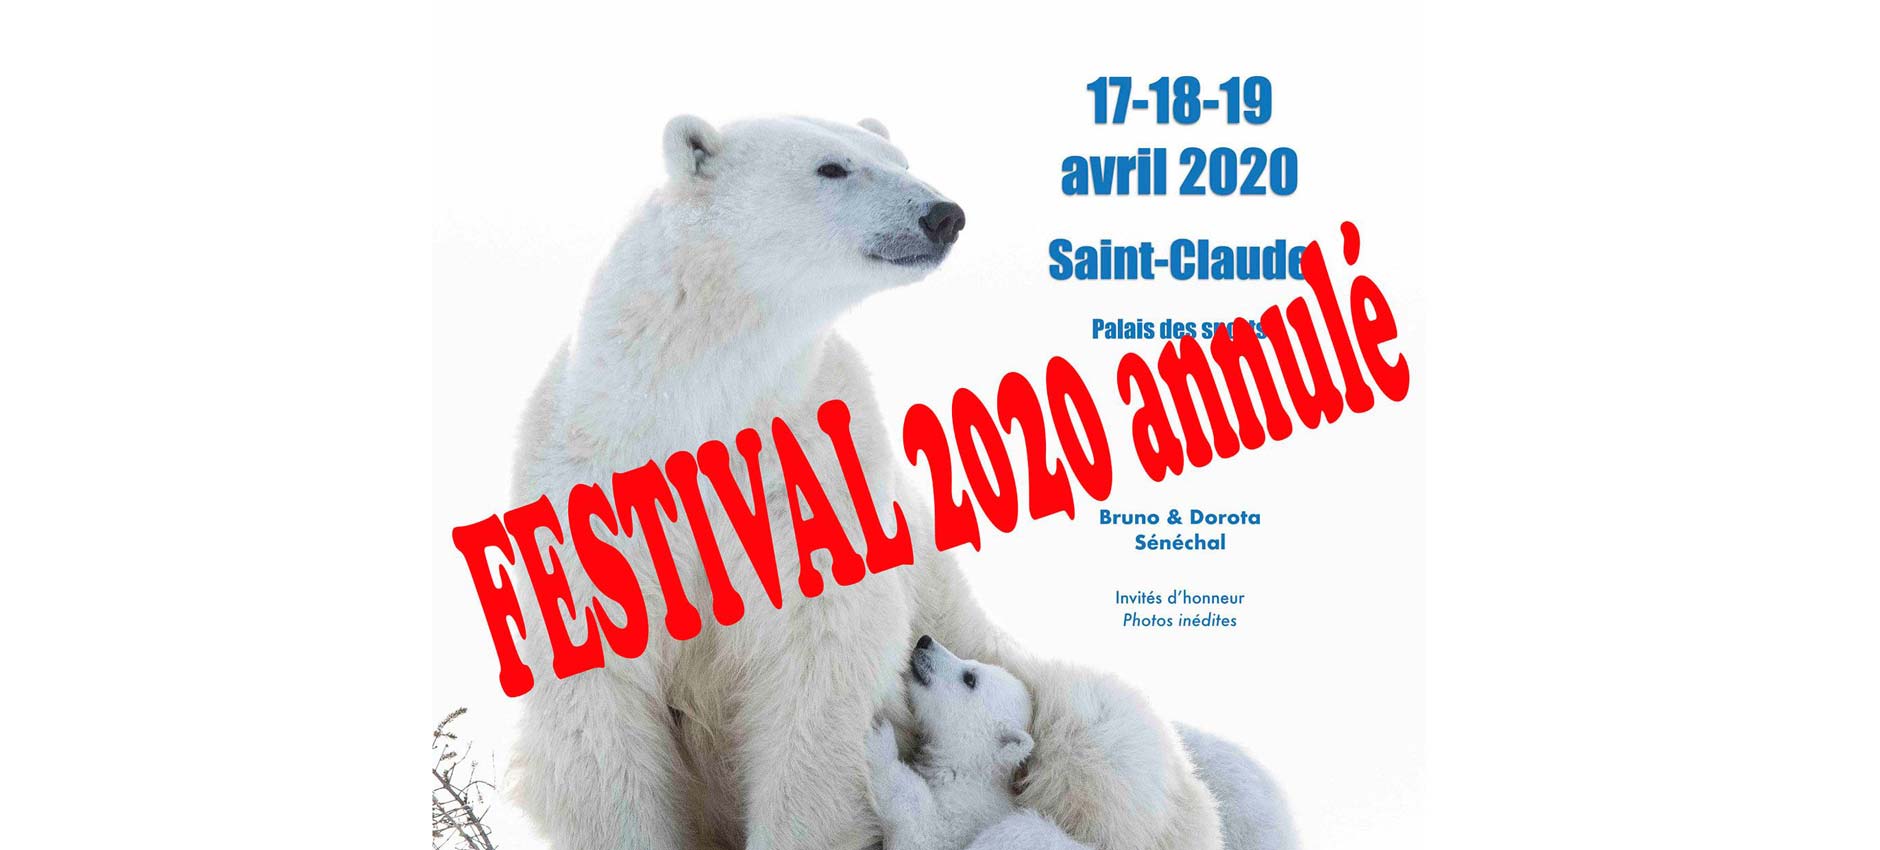 Avril Mai Juin 2020 - 6 Festivals annulés